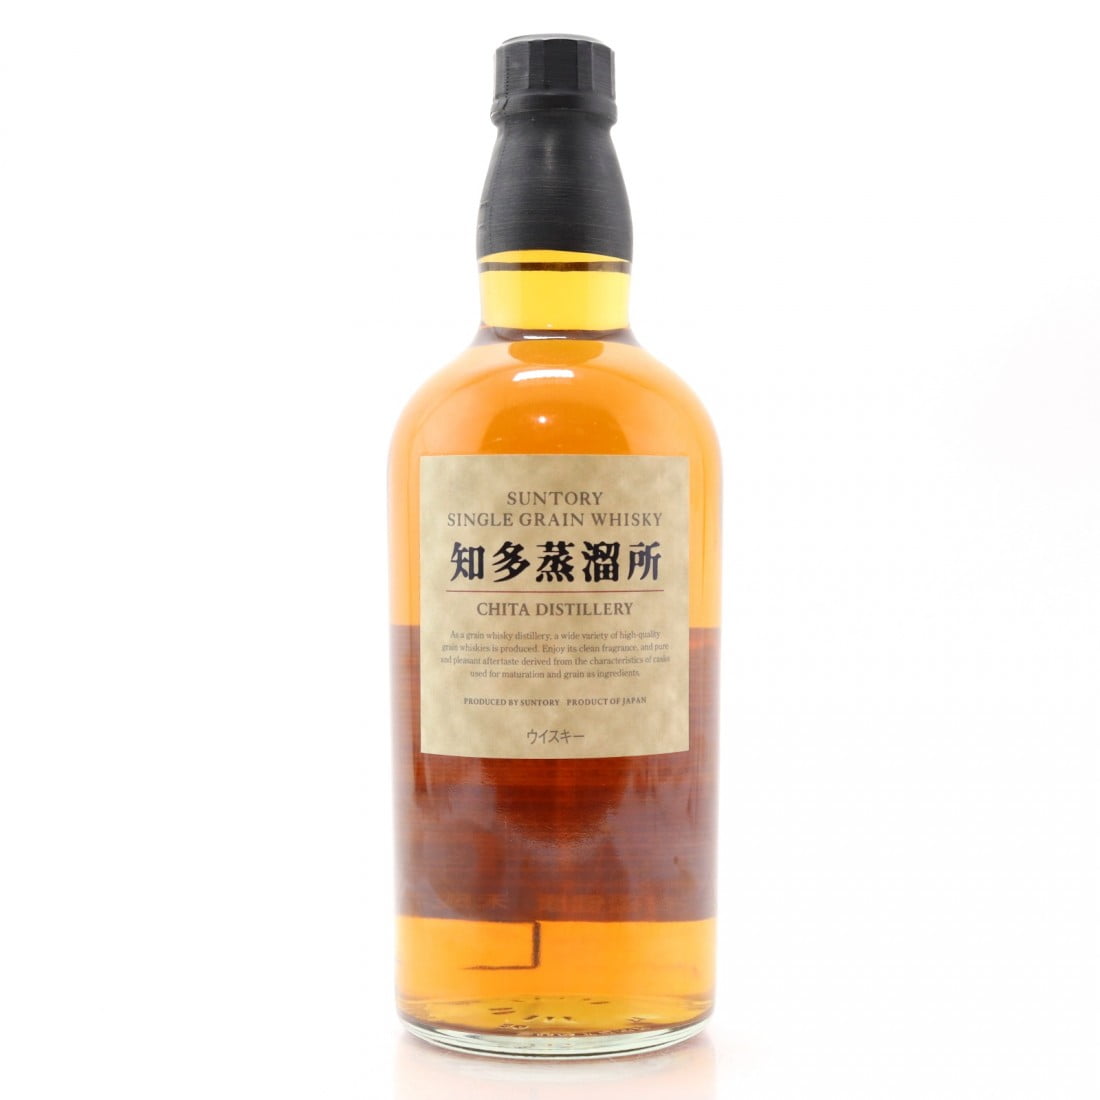 Suntory Chita Grain Whisky 2014 Version (1x70cl) - TwoMoreGlasses.com